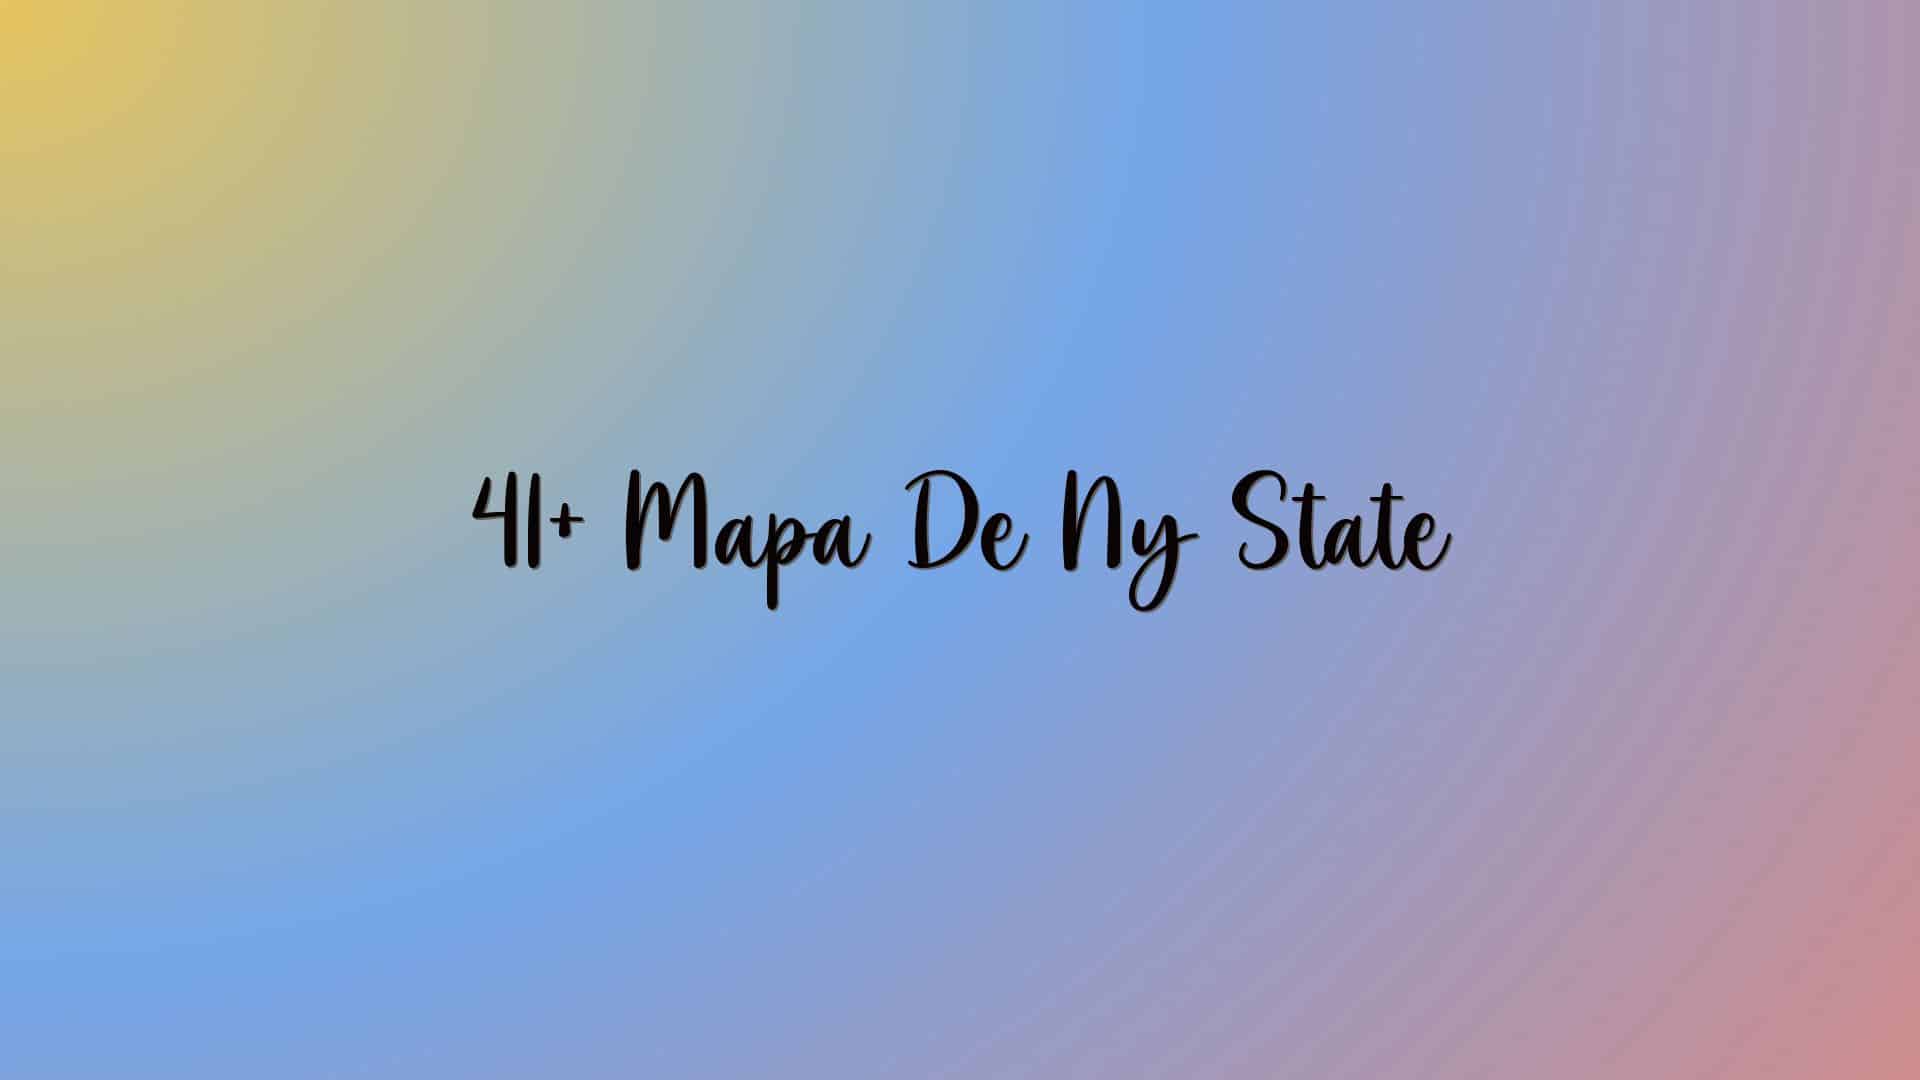 41+ Mapa De Ny State